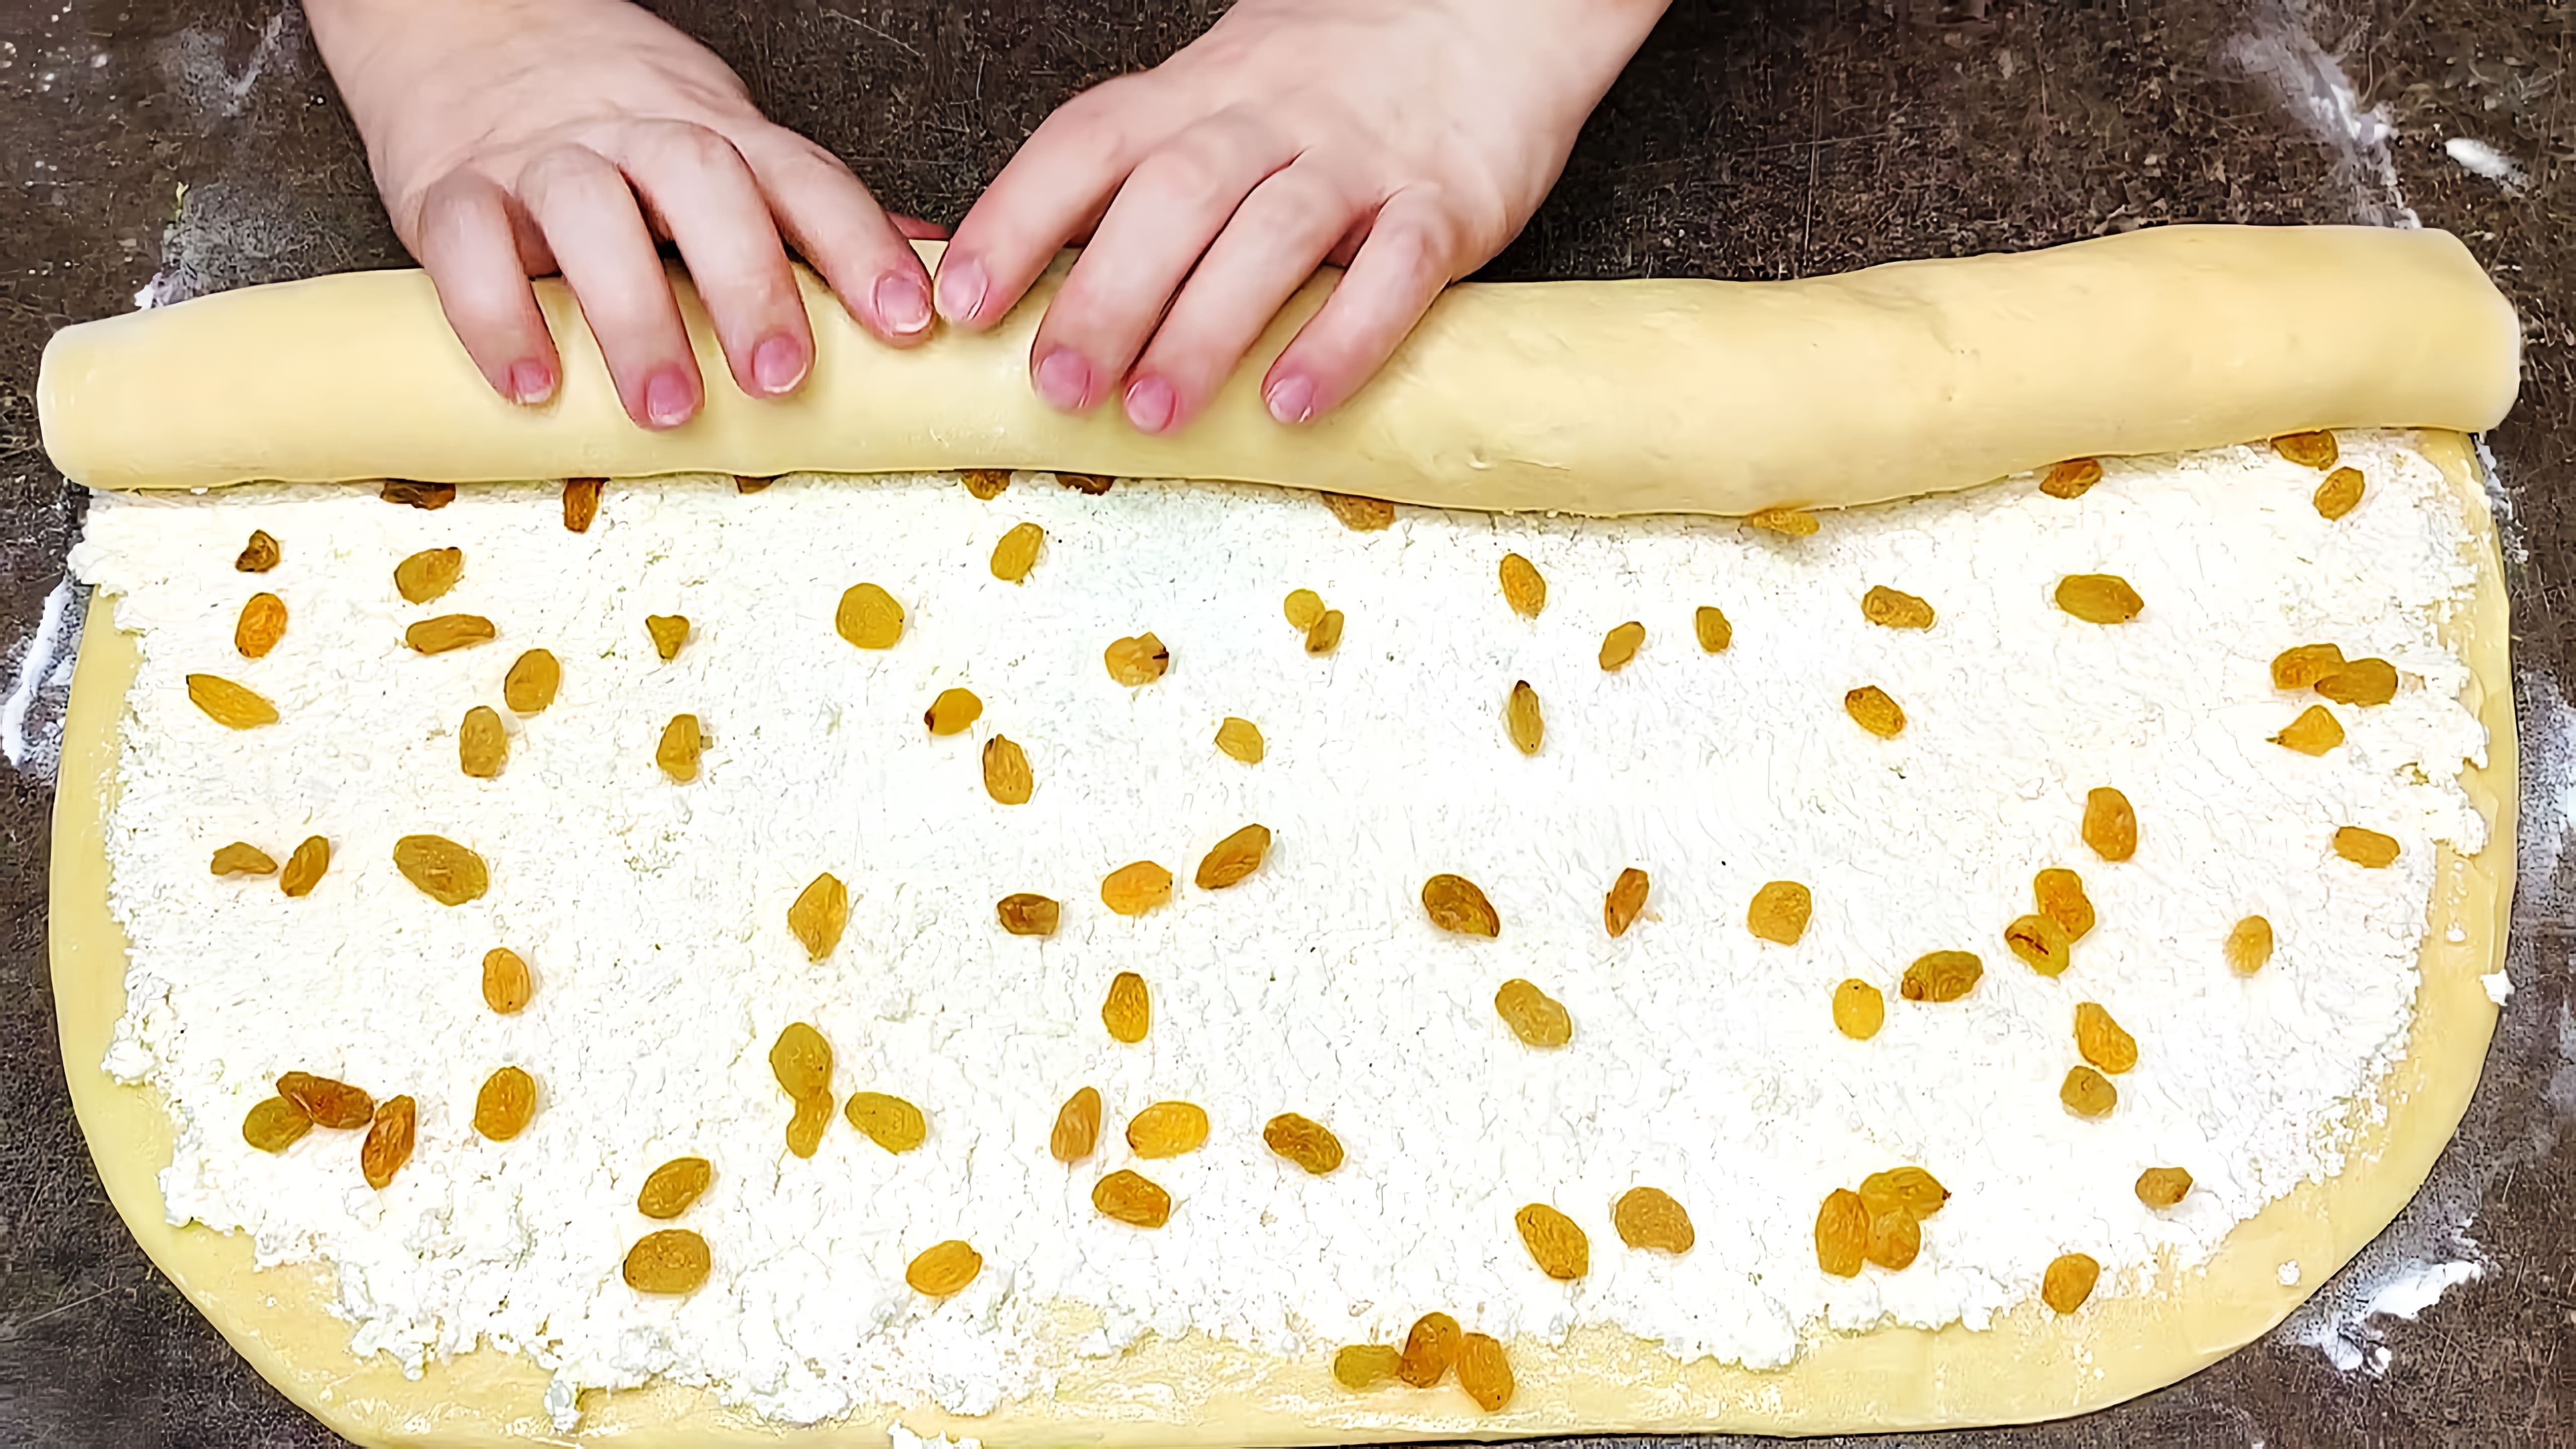 Видео рецепт для приготовления творожных булочек, русской выпечки из творога